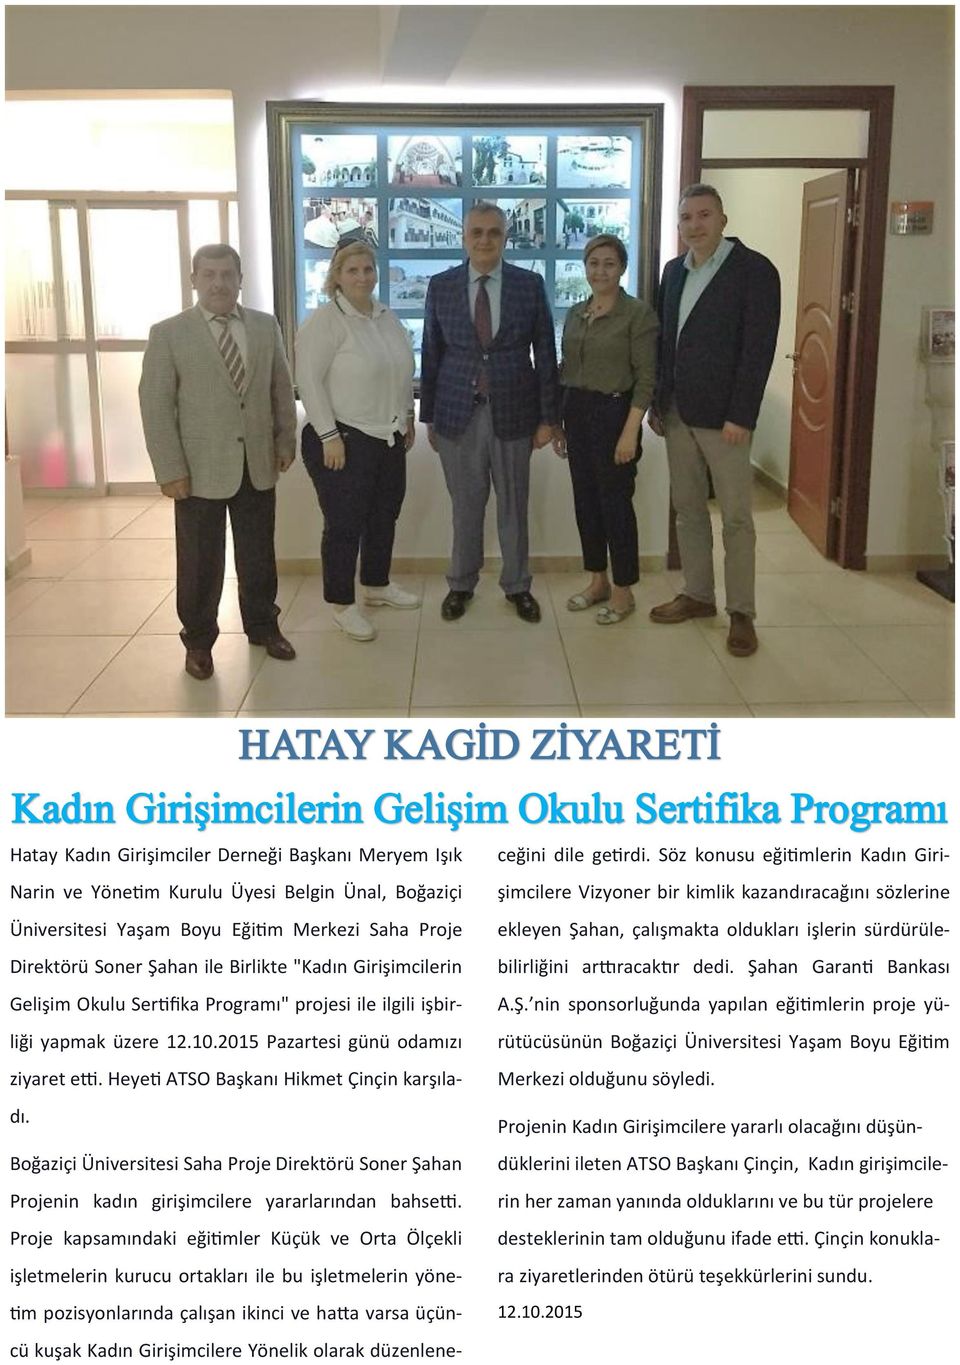 Boğaziçi Üniversitesi Saha Proje Direktörü Soner Şahan Projenin kadın girişimcilere yararlarından bahsetti.